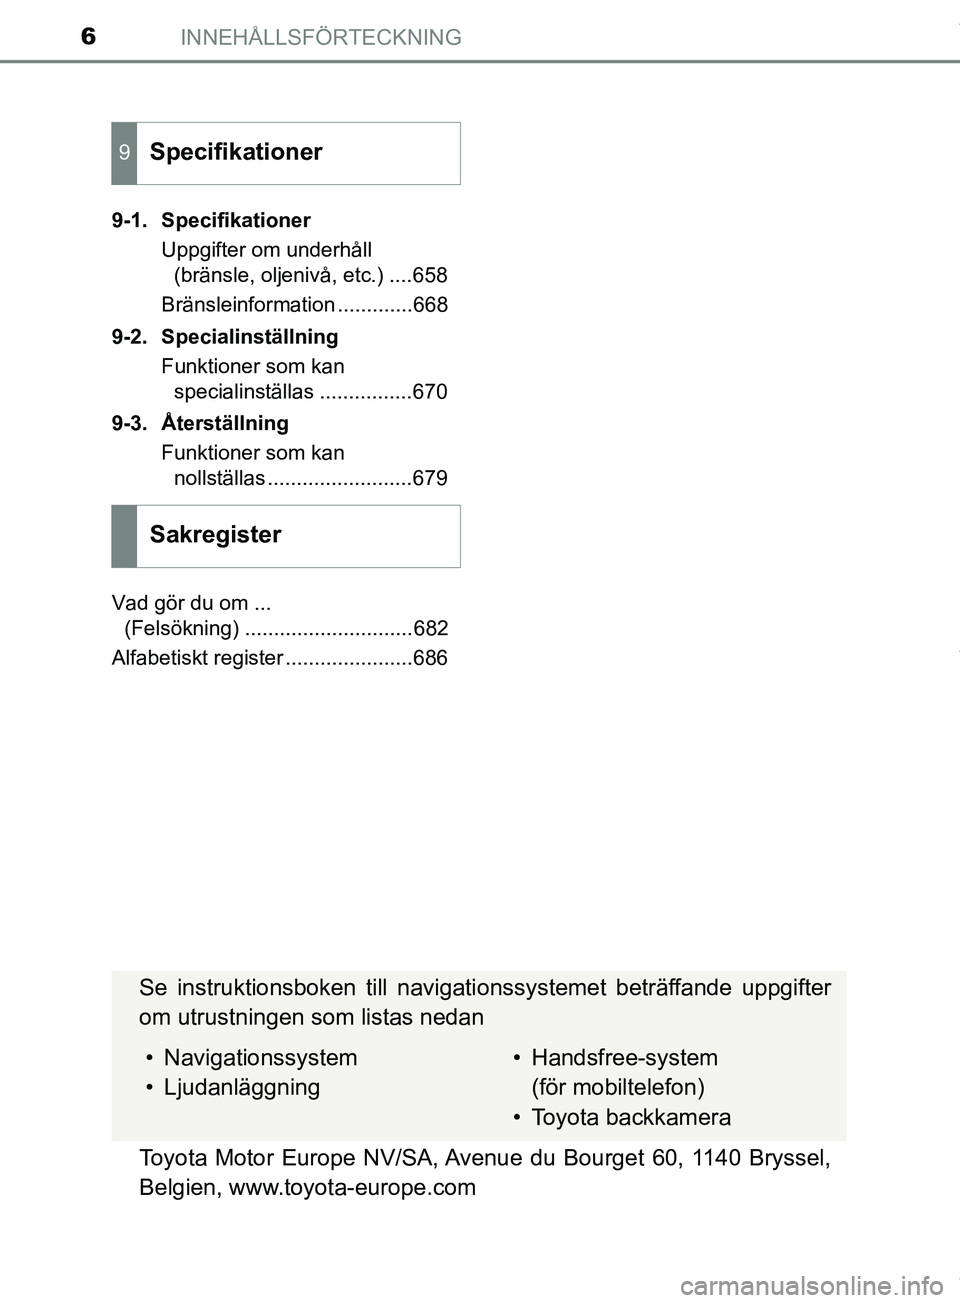 TOYOTA PRIUS PLUG-IN HYBRID 2018  Bruksanvisningar (in Swedish) INNEHÅLLSFÖRTECKNING6
OM47C99SE9-1. Specifikationer
Uppgifter om underhåll (bränsle, oljenivå, etc.) ....658
Bränsleinformation .............668
9-2. Specialinställning Funktioner som kan speci